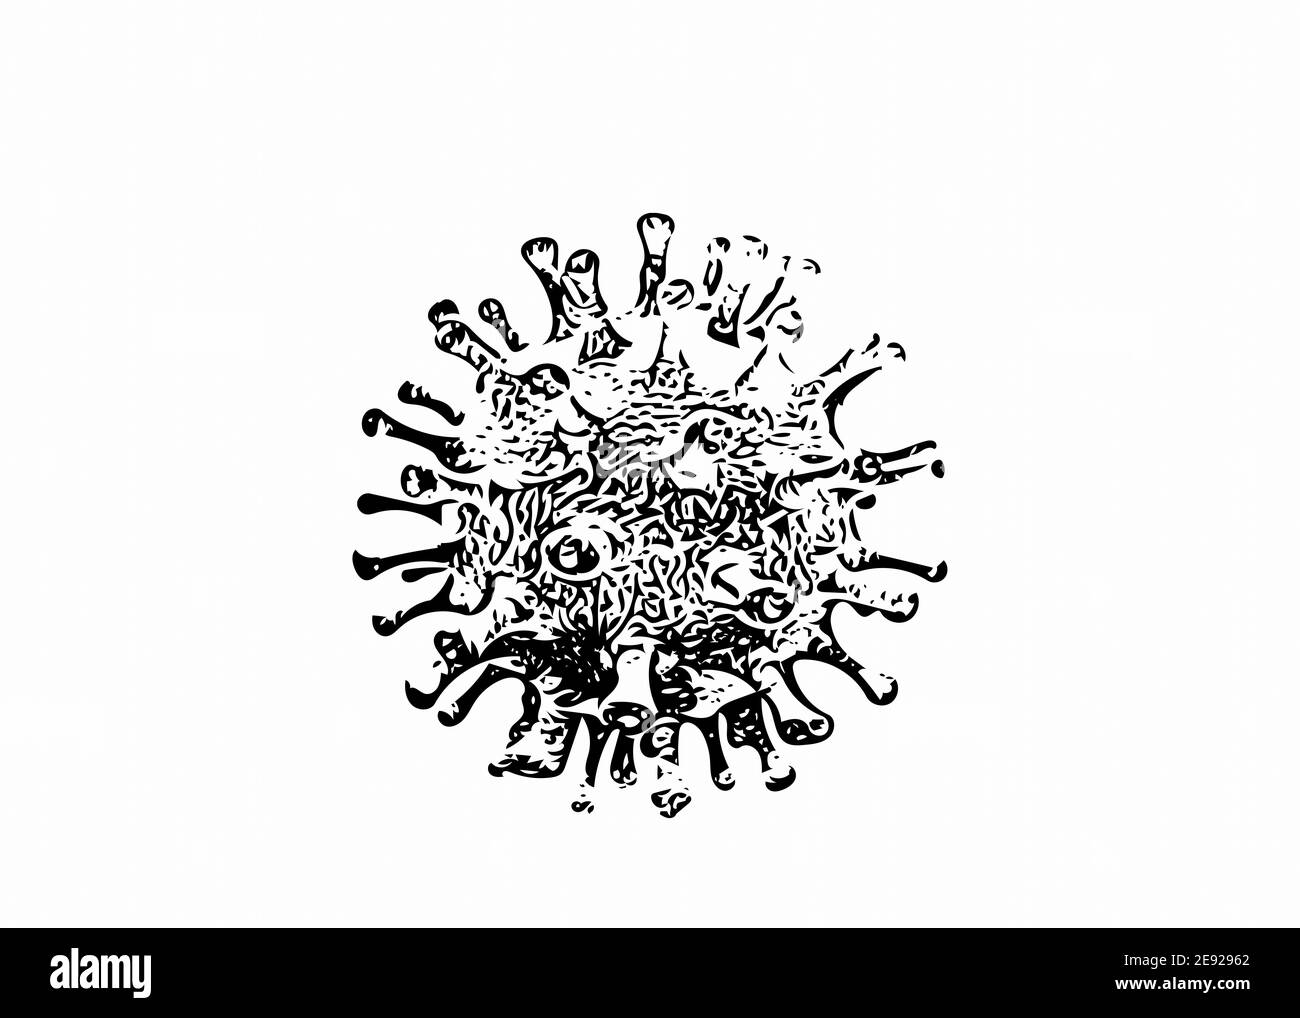 Images du virus corona abstrait. Banque D'Images